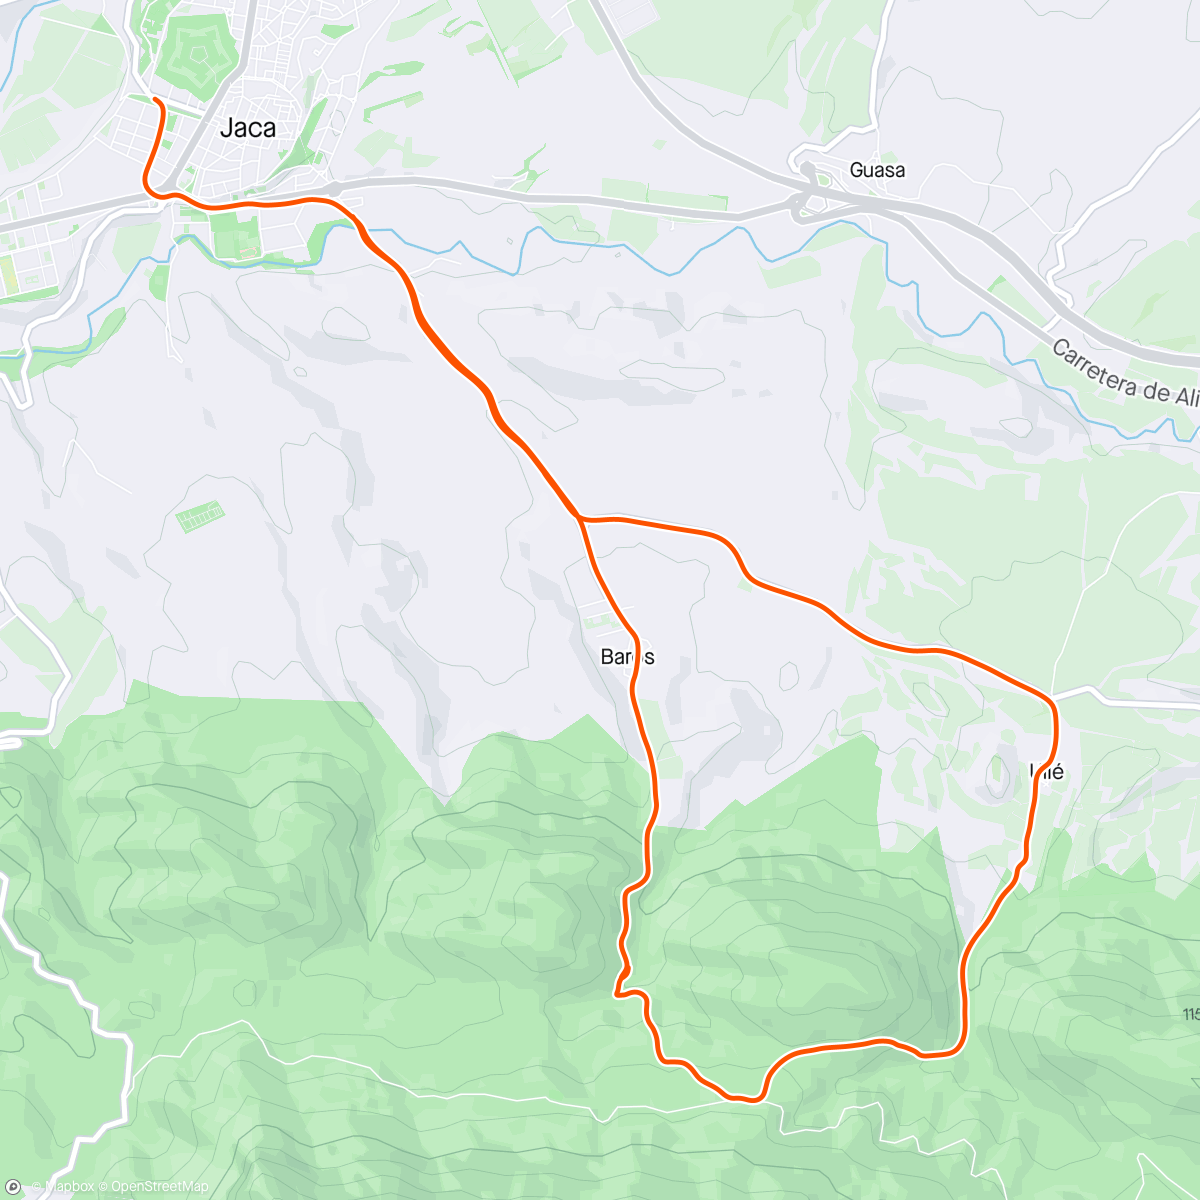 Map of the activity, Jaca-Baros-Parador Oroel-Ulle-Jaca